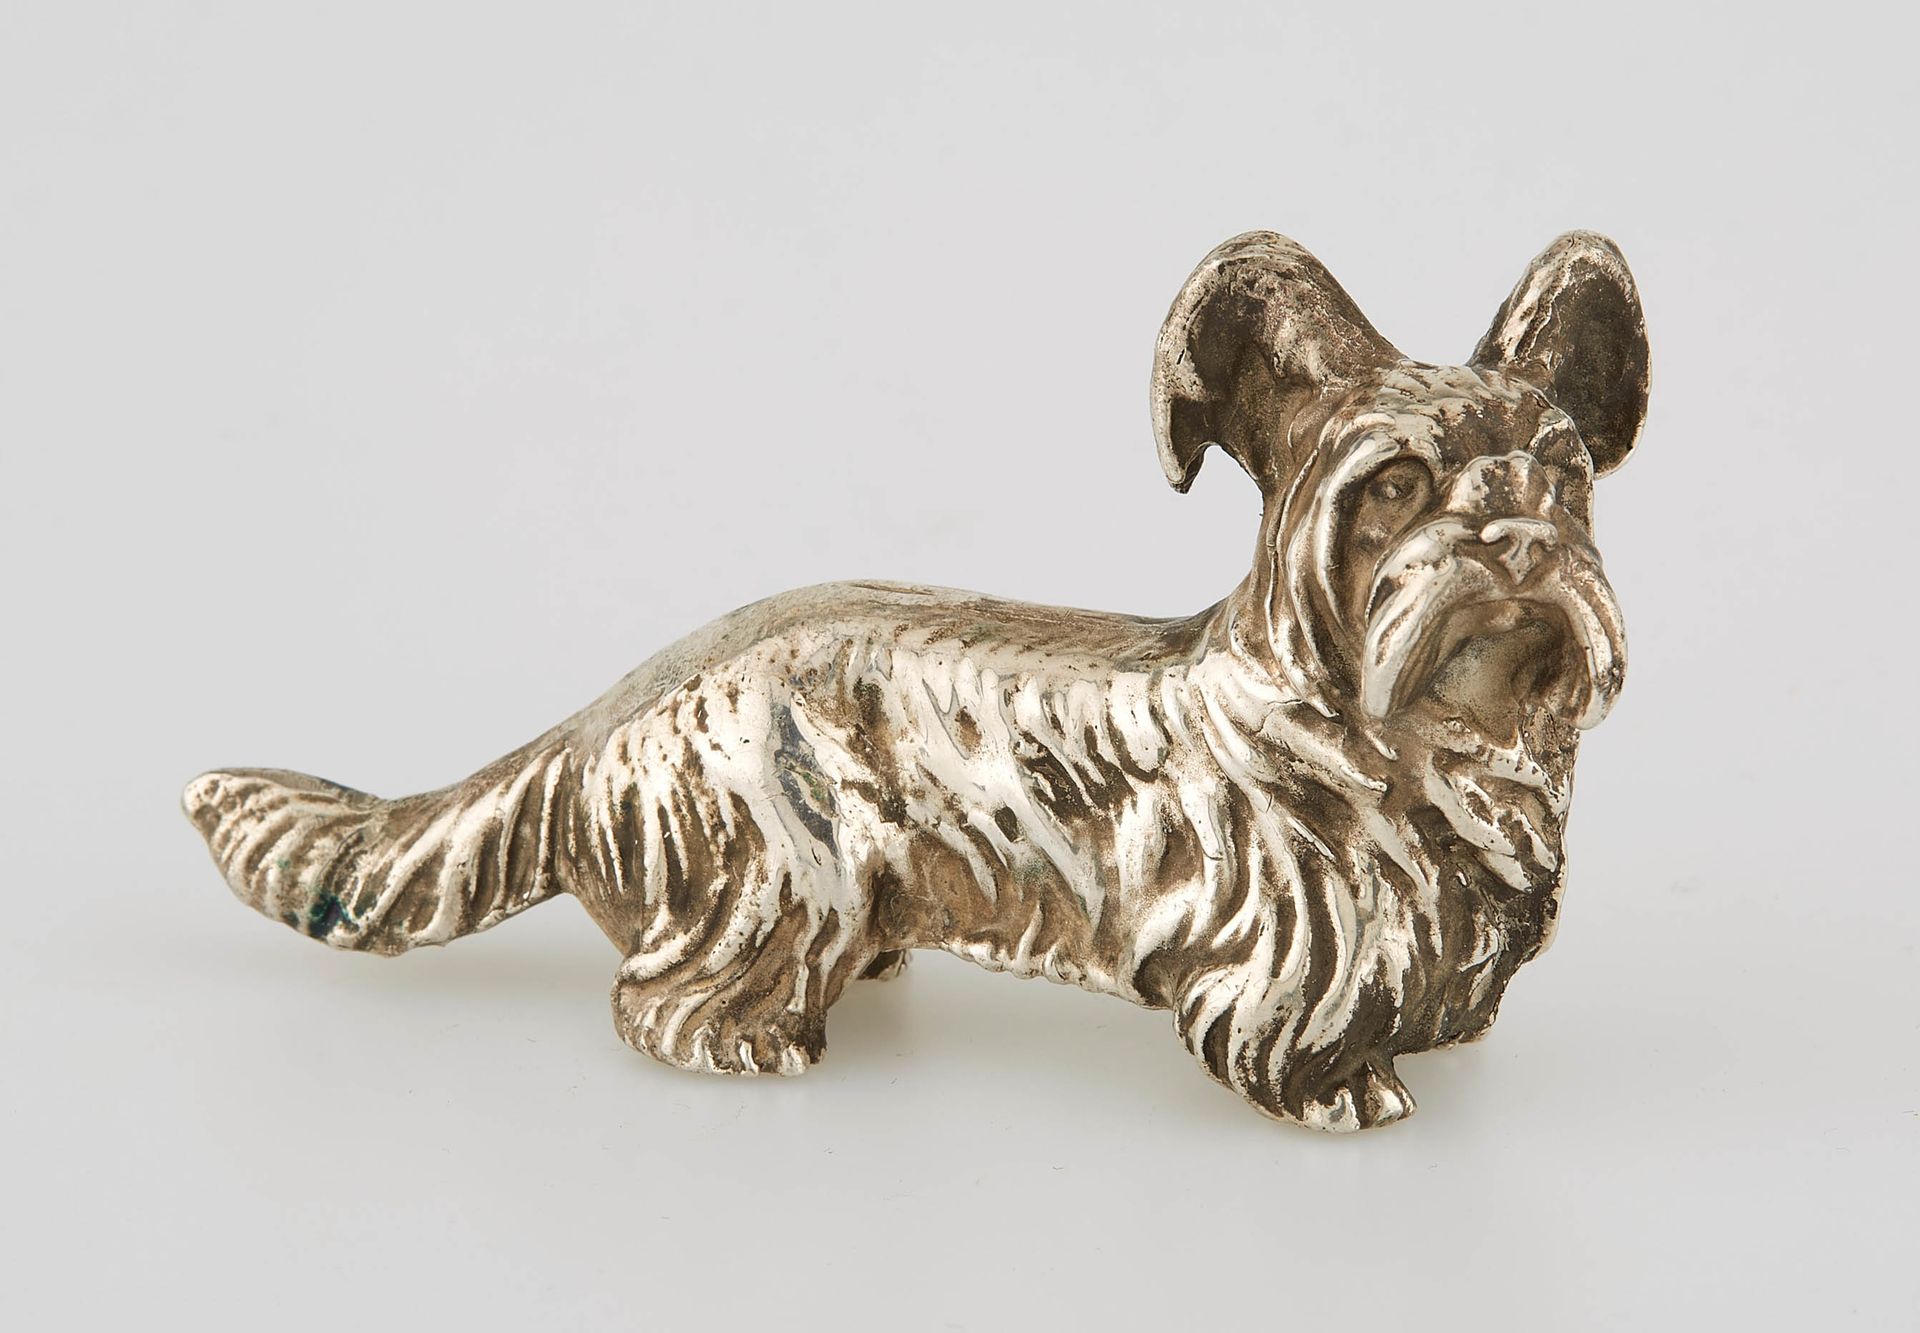 Null 代表一只狗的银质小雕像。Minerve的标志。高度：4.5厘米。高度：4.5厘米。长度：8.5厘米。重量：210克。